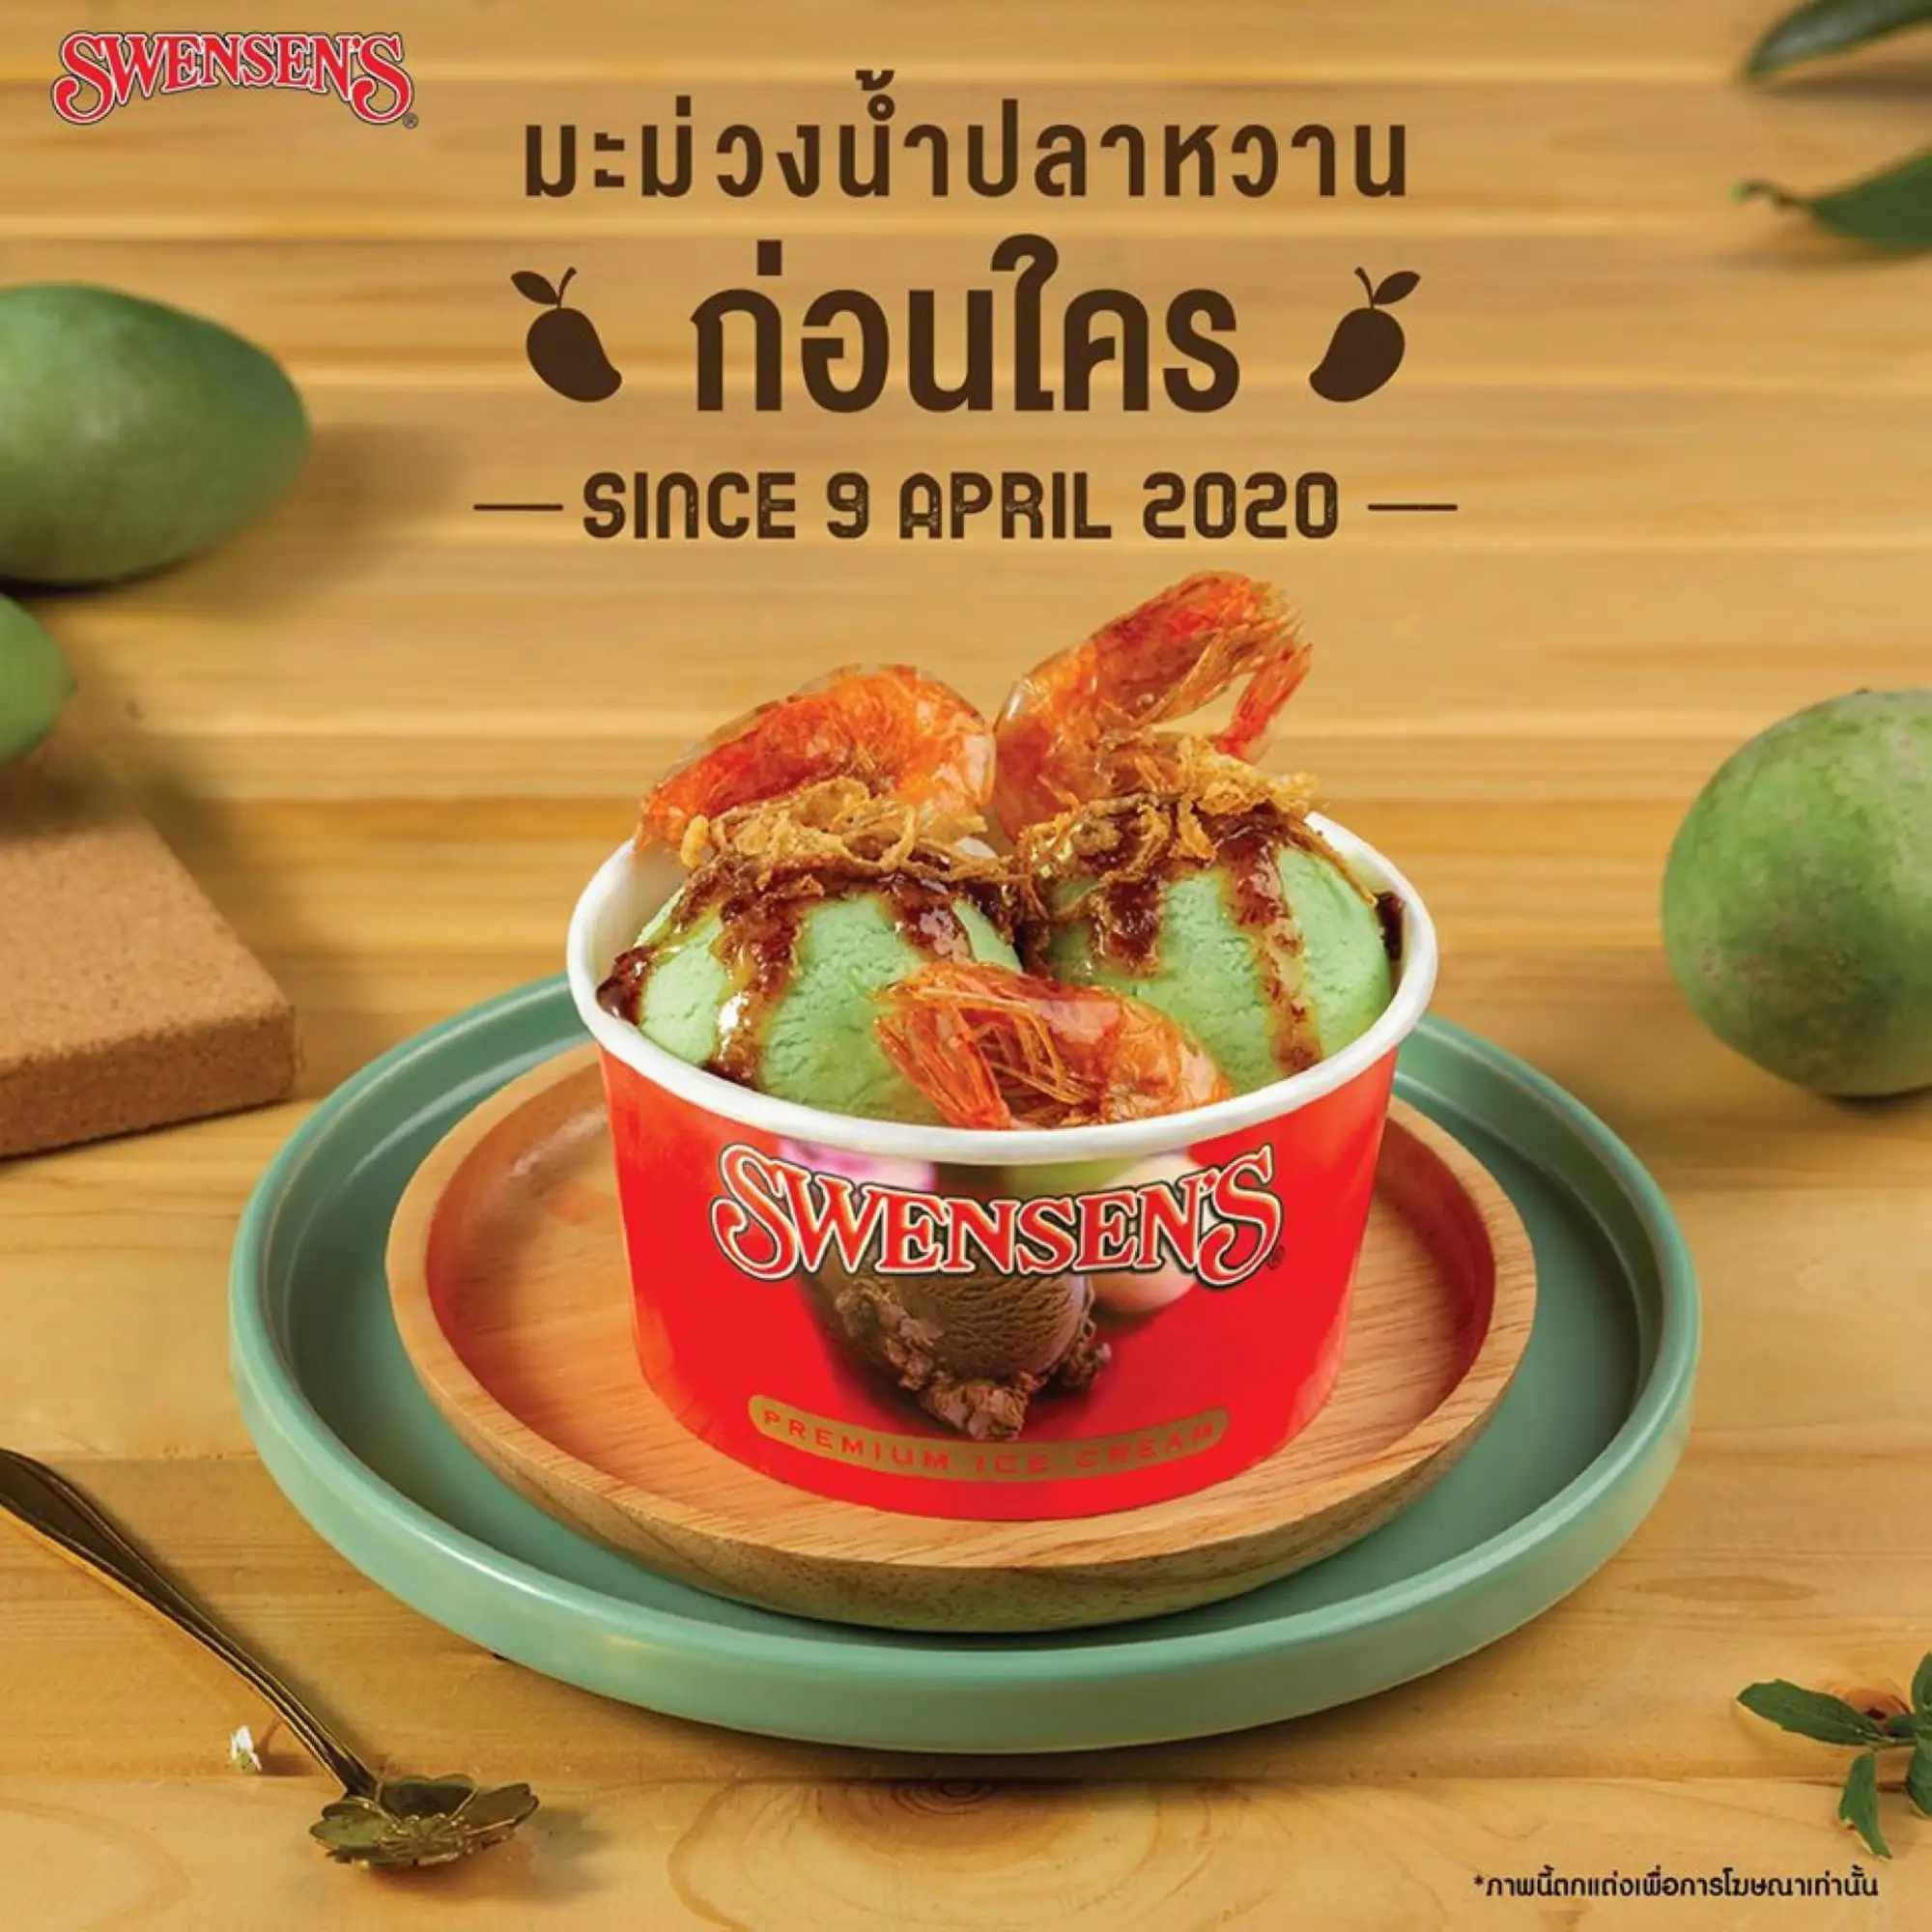 泰國雙聖推出限定芒果魚露冰淇淋(官網圖)